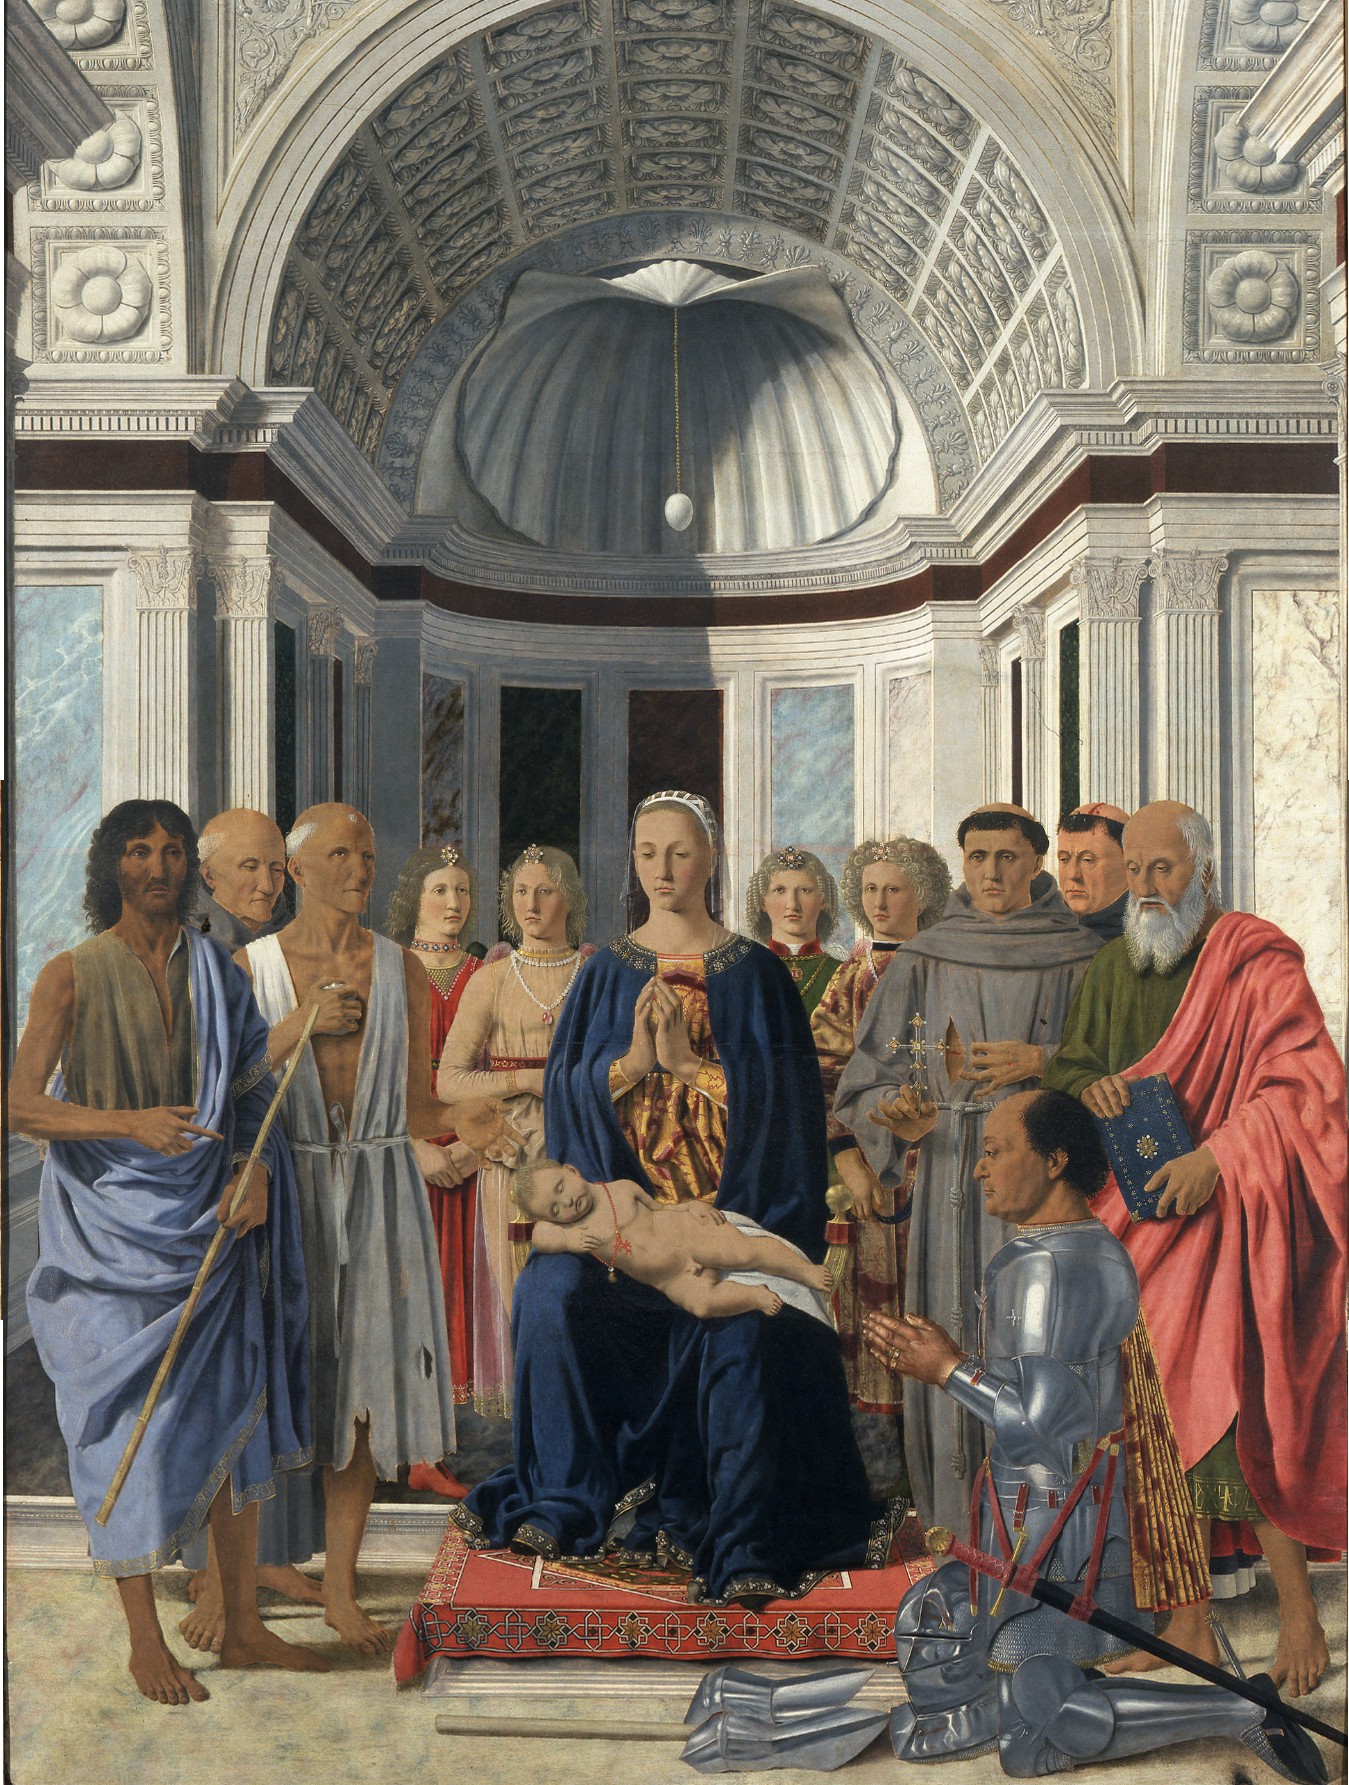 Piero della Francesca: the world knew him not